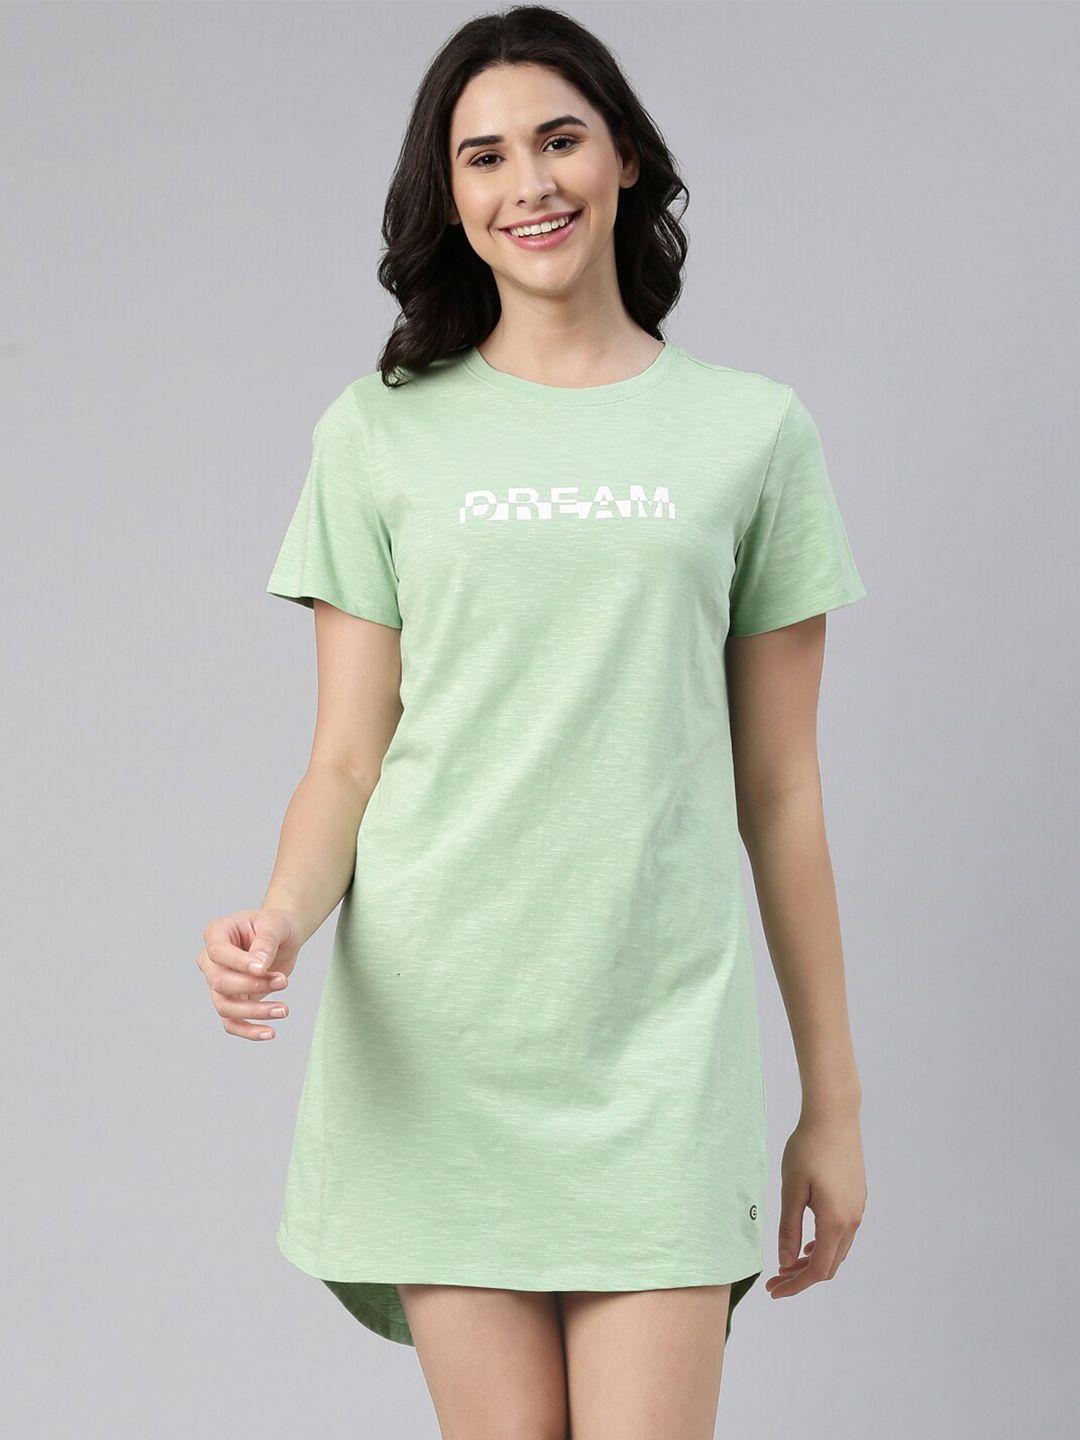 enamor printed pure cotton t-shirt nightdress